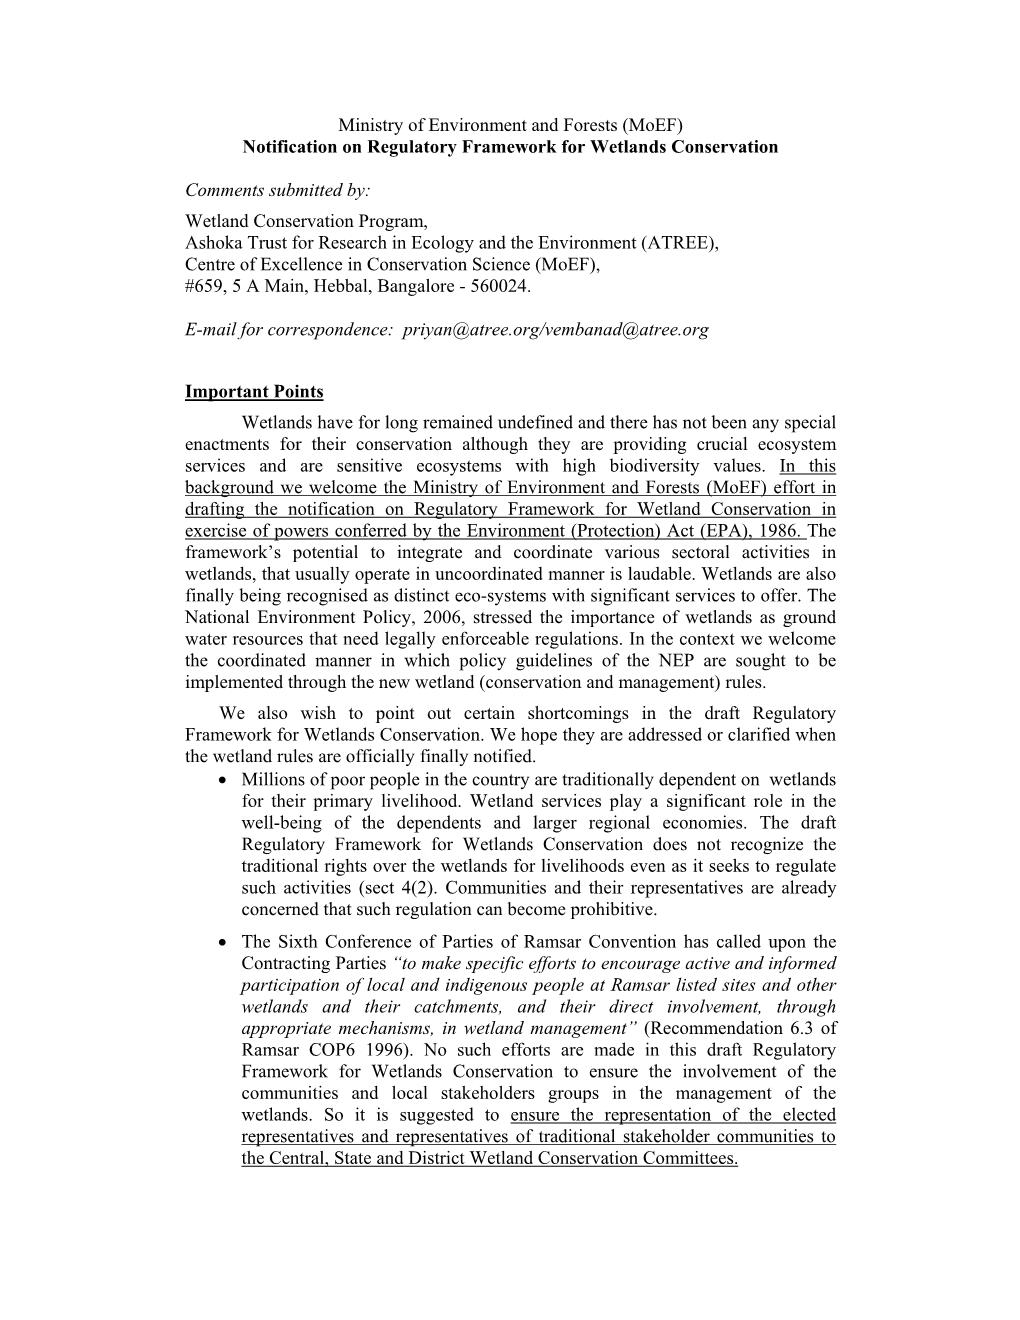 (Moef) Notification on Regulatory Framework for Wetlands Conservation